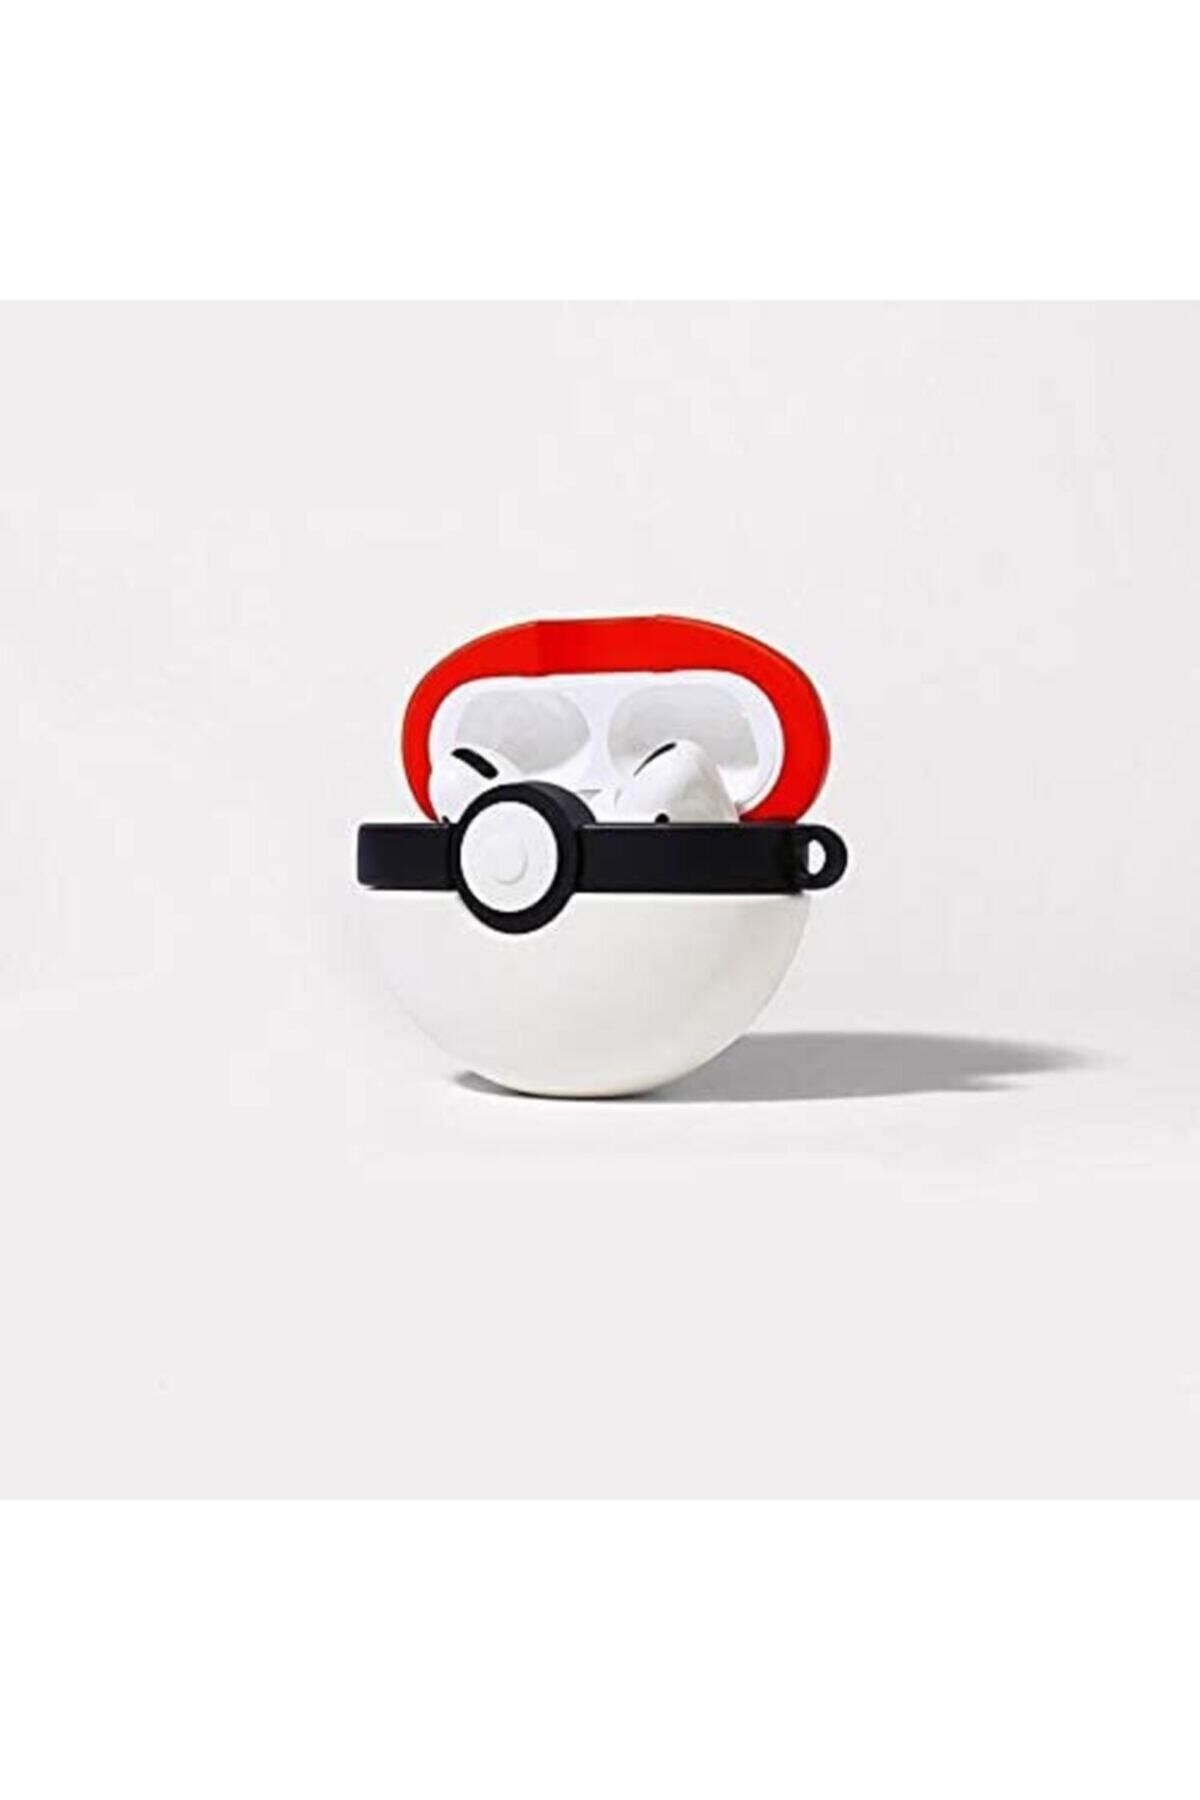 MY MÜRDÜM Sevimli Poke Topu  Pro Kılıfı Pokemon